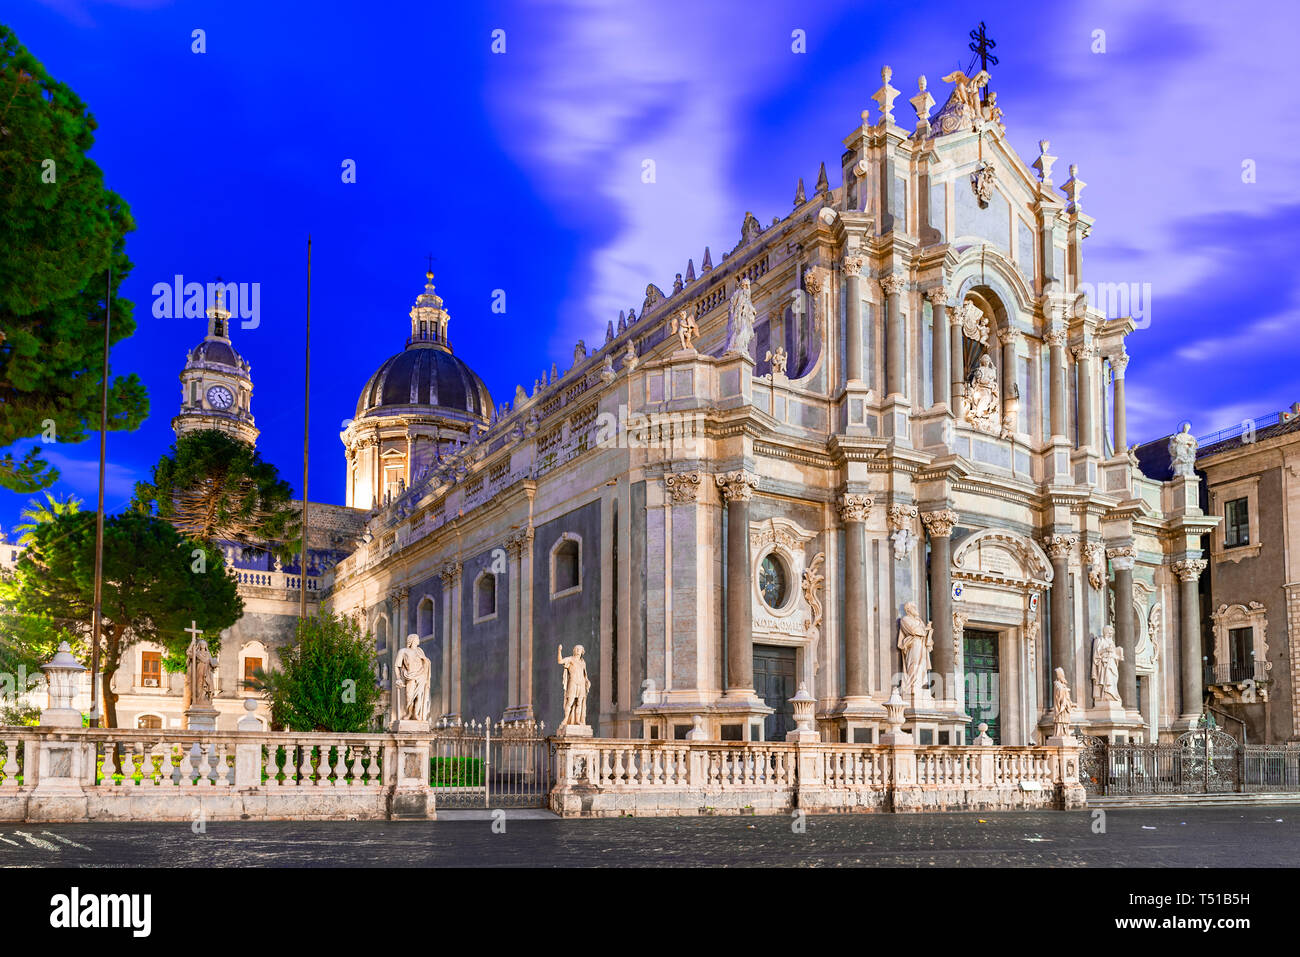 L'île de Catane, en Sicile, Italie : vue nocturne de la cathédrale de Santa Agatha sur la Piazza Duomo Banque D'Images